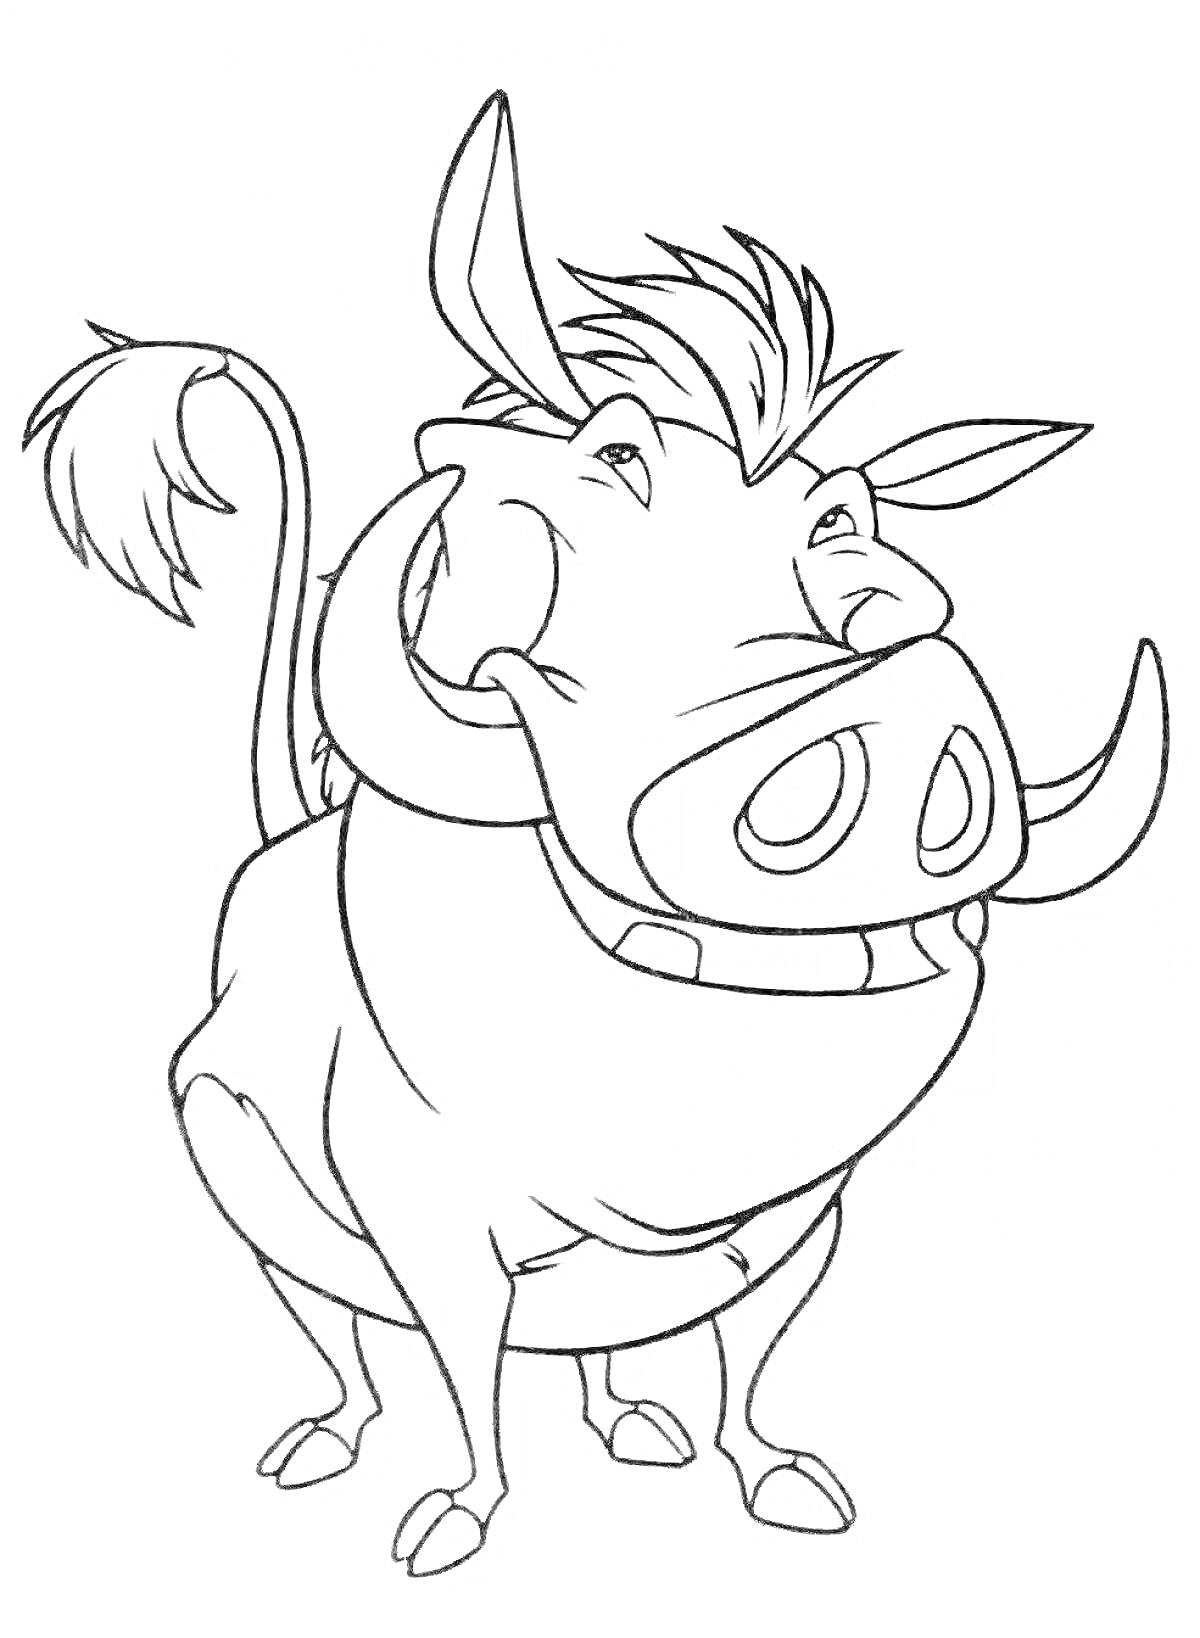 Раскраска Раскраска с пумбой из мультфильма, включая уши, клыки, хвост, гриву и ноги